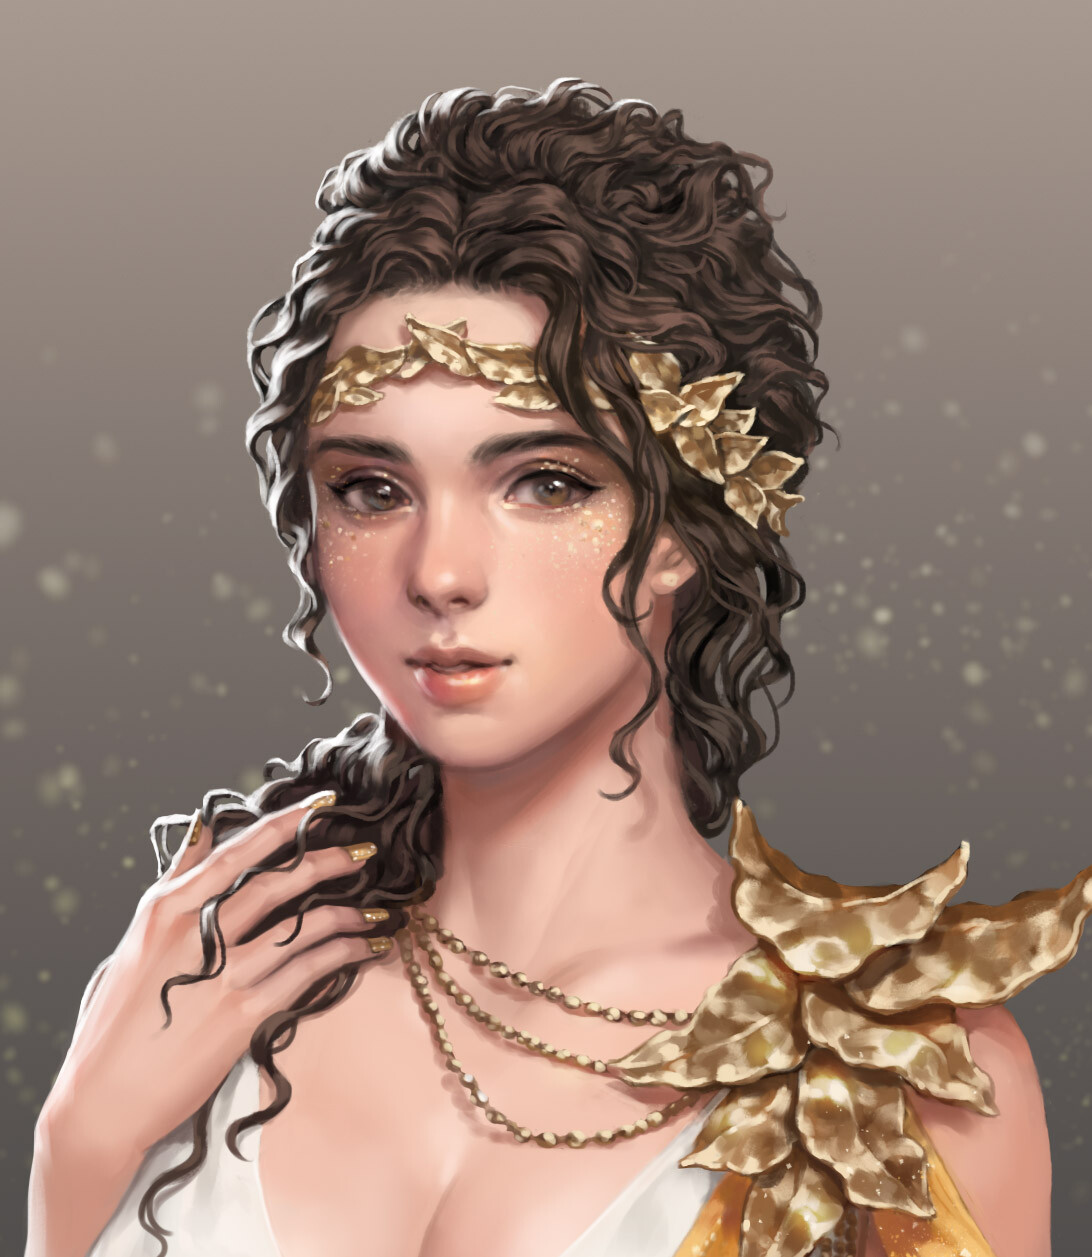 ang po - greek goddess